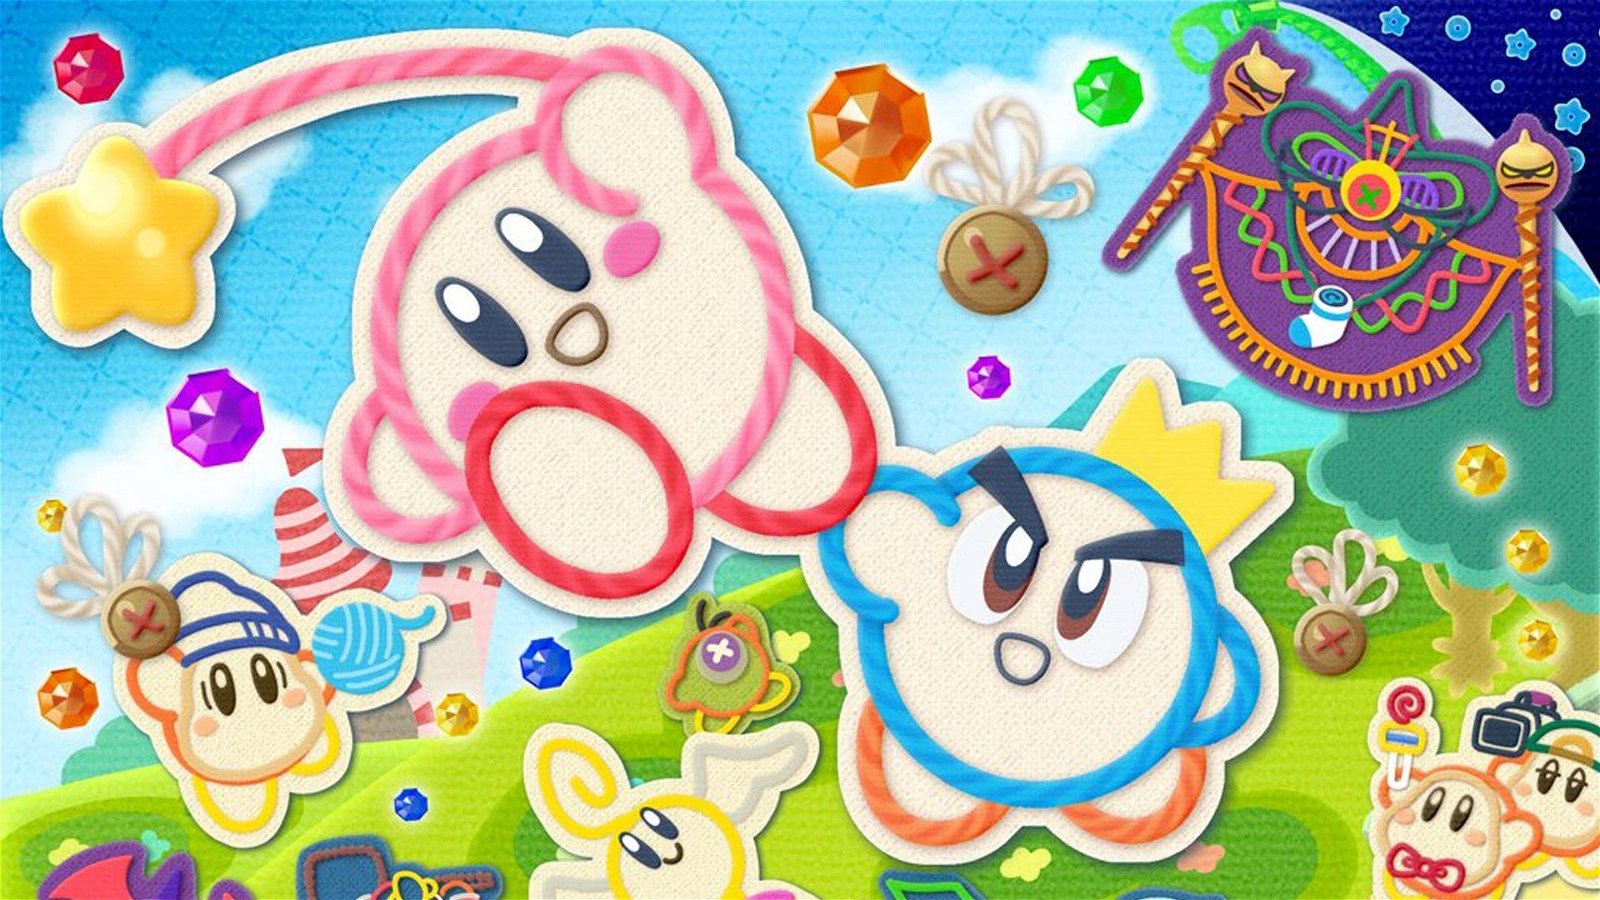 Immagine di Kirby: è morto l'avvocato che aveva dato il nome al personaggio Nintendo